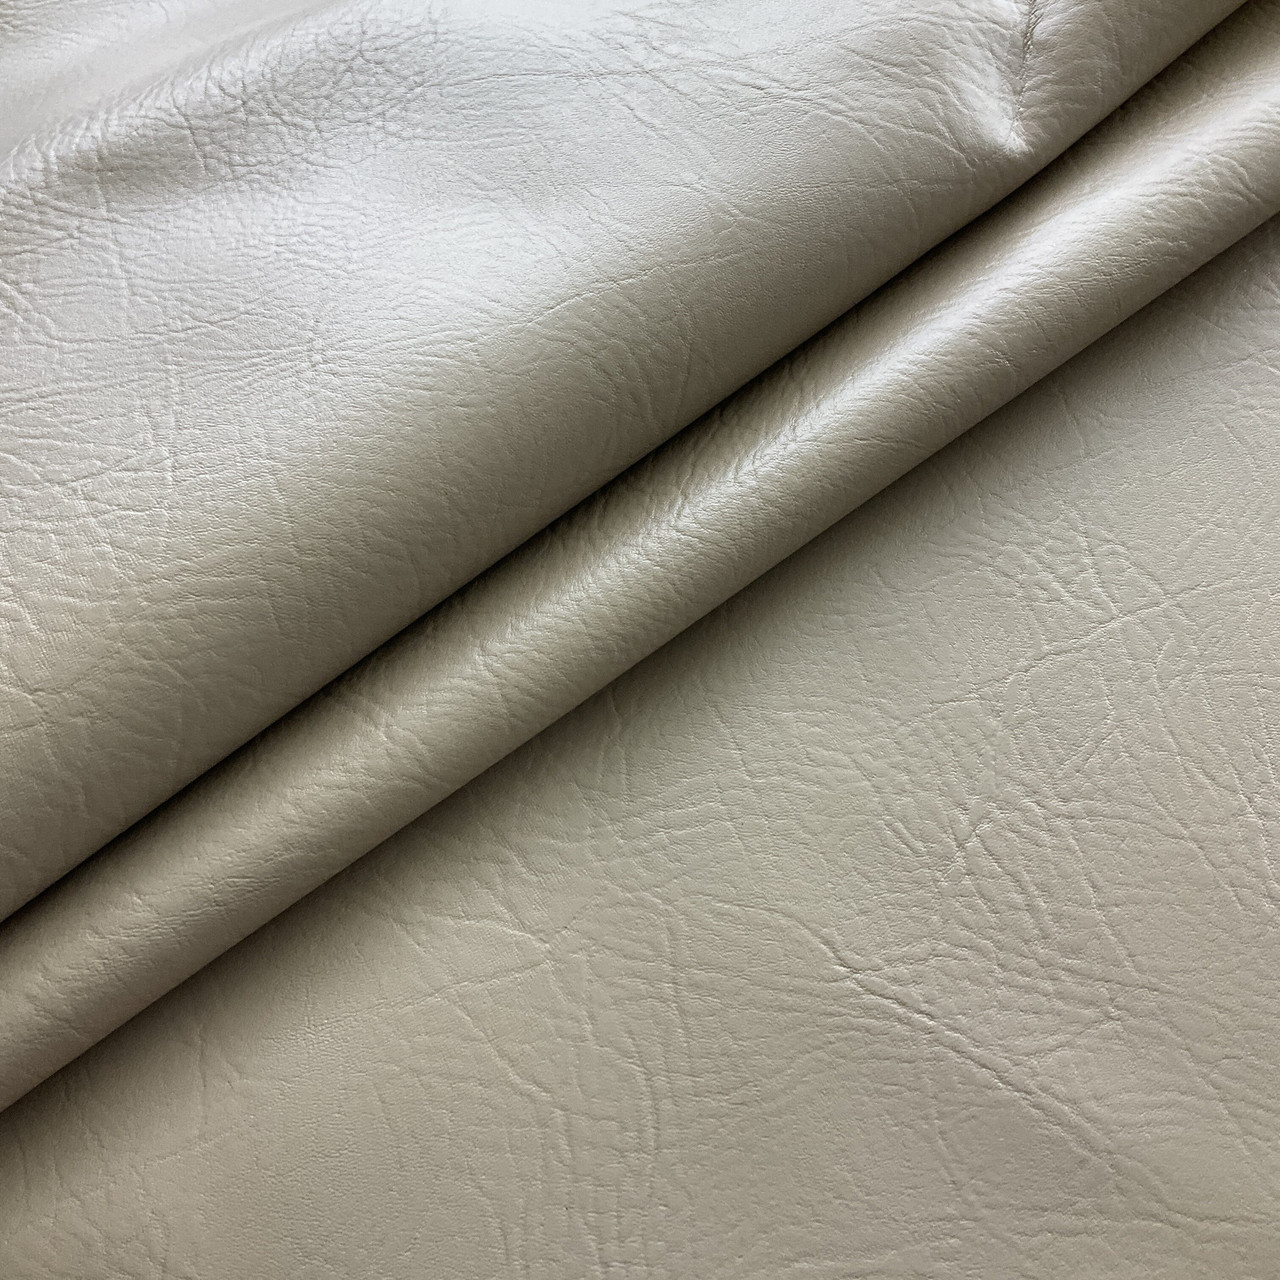 Brown upholstery vinyl - distressed finish - waterproof